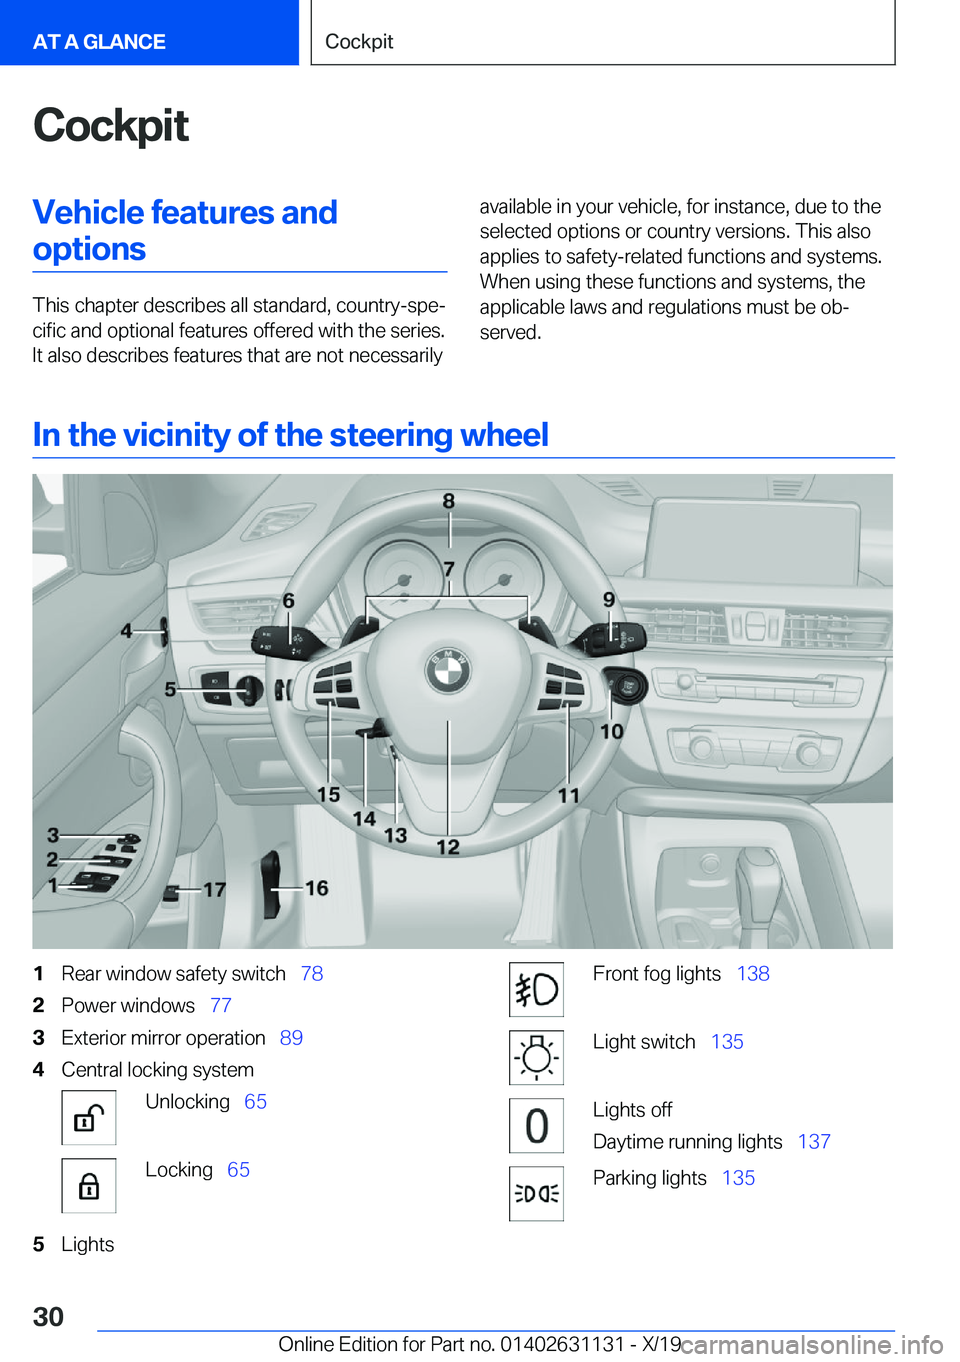 BMW X1 2020 Owners Manual �C�o�c�k�p�i�t�V�e�h�i�c�l�e��f�e�a�t�u�r�e�s��a�n�d�o�p�t�i�o�n�s
�T�h�i�s��c�h�a�p�t�e�r��d�e�s�c�r�i�b�e�s��a�l�l��s�t�a�n�d�a�r�d�,��c�o�u�n�t�r�y�-�s�p�e#j�c�i�f�i�c��a�n�d��o�p�t�i�o�n�